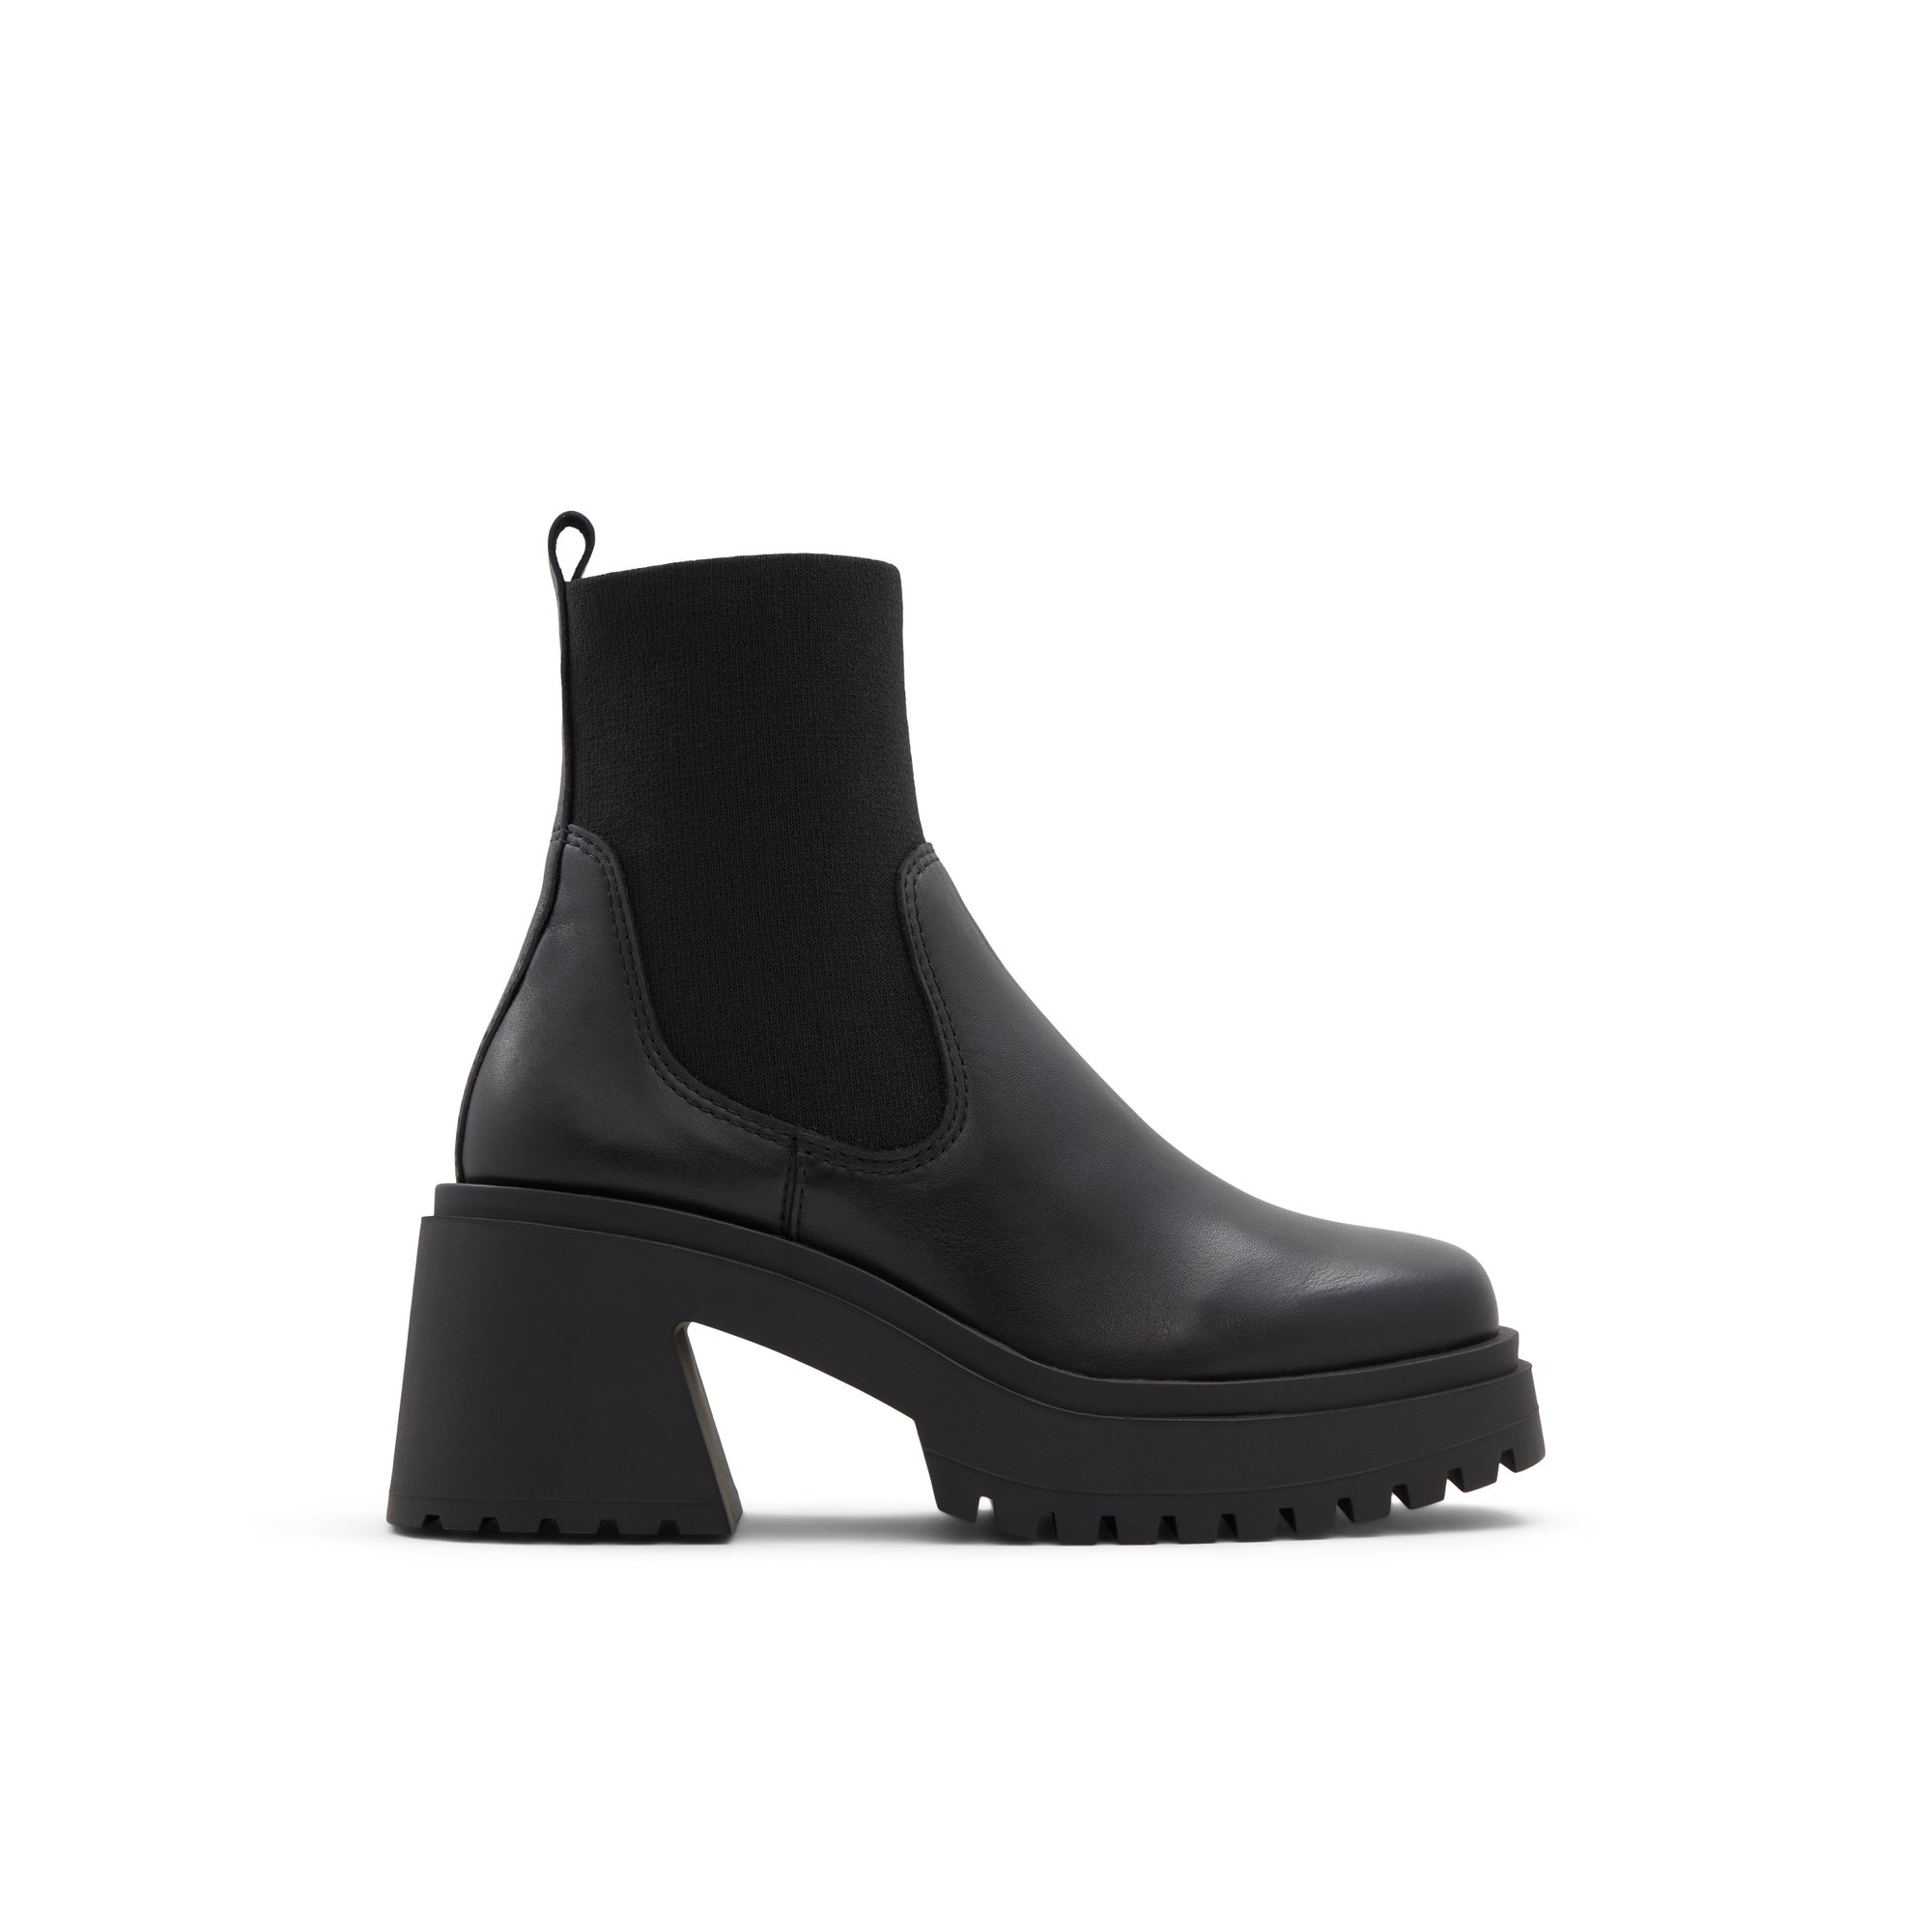 ALDO Galoan - Women's Boots Chelsea - Black